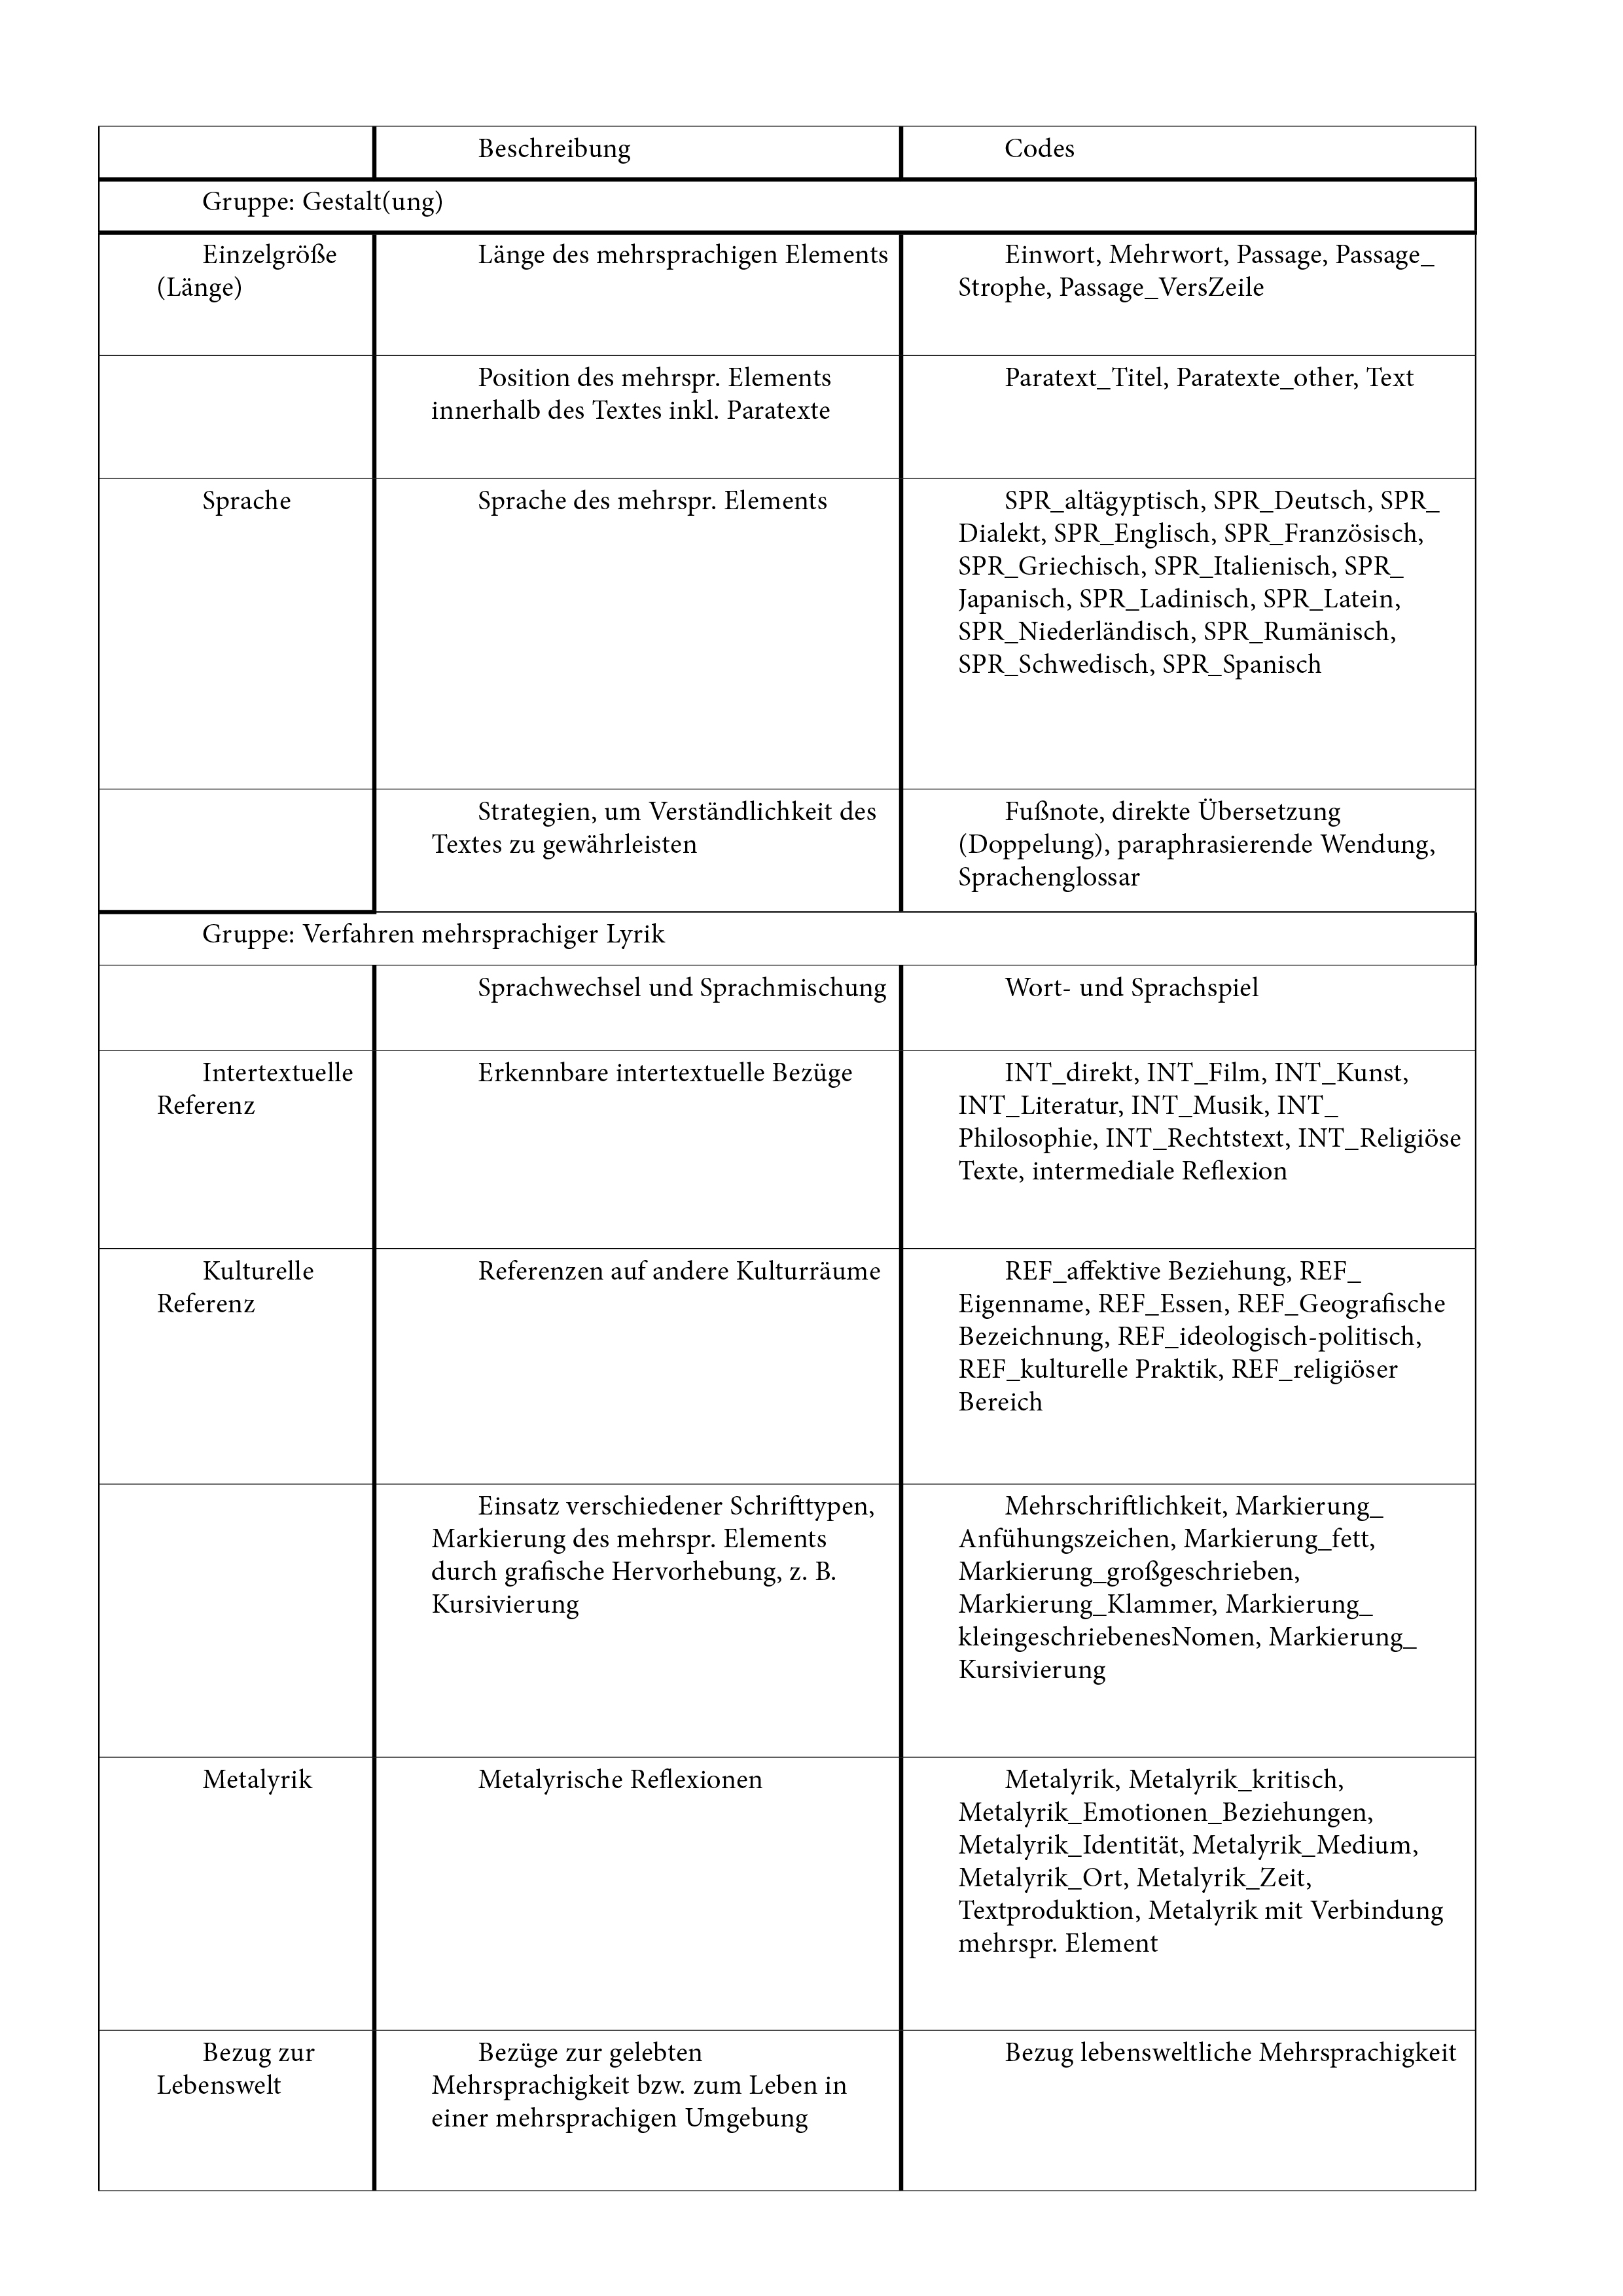 Tabelle 2 Annotationskategorien mit Beschreibung und Codes